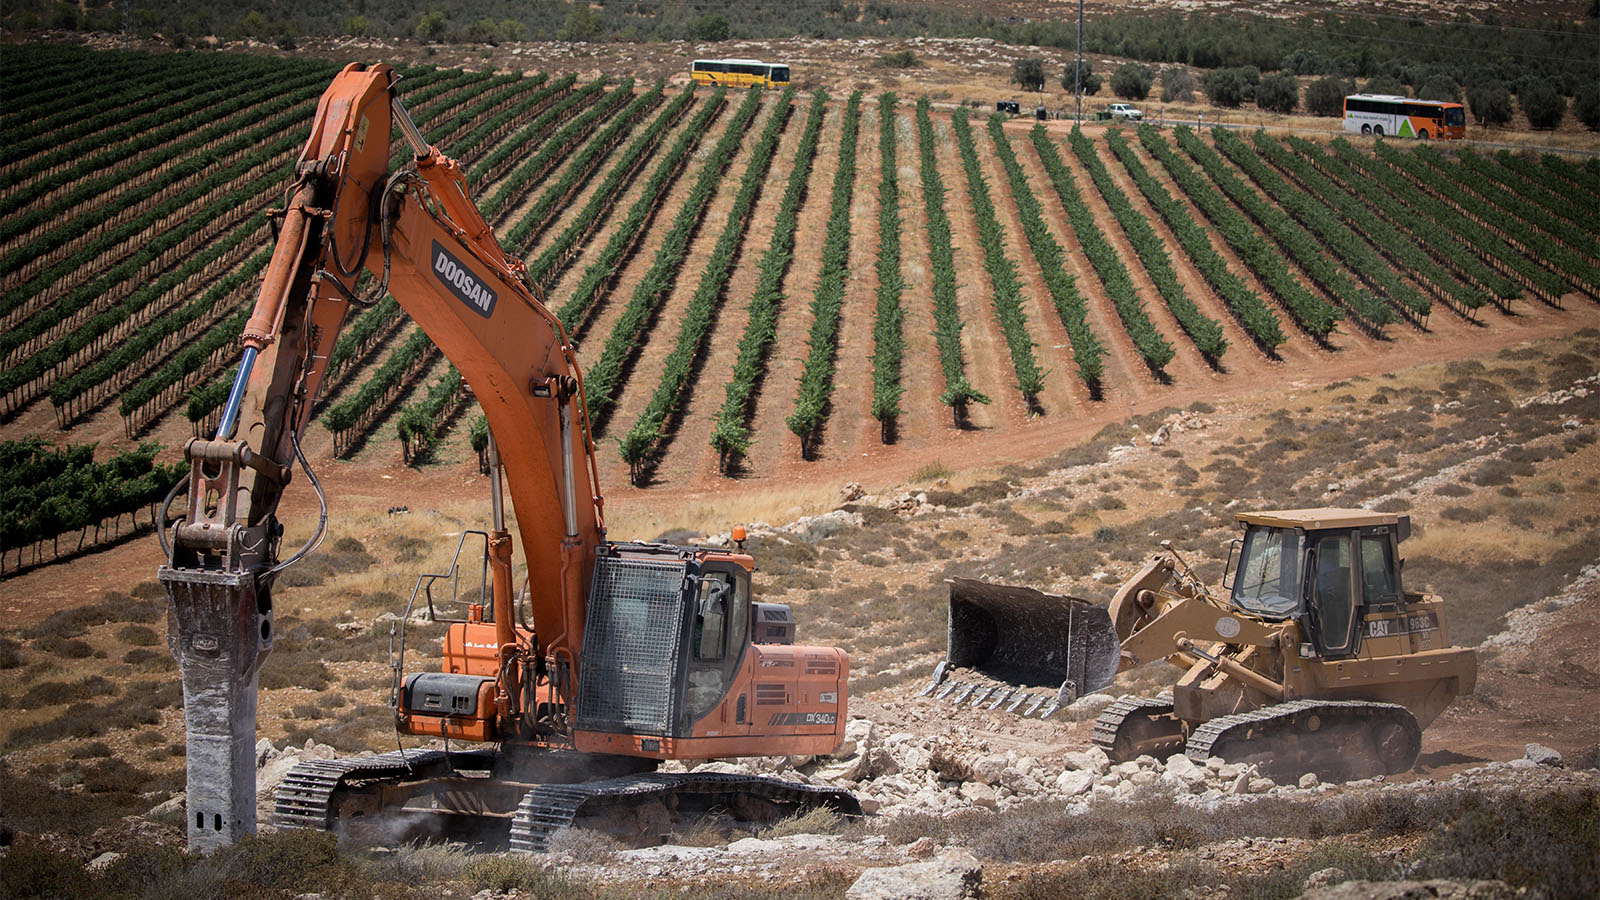 בניית היישוב עמיחי בעמק שילה המיועד למפוני עמונה 20 ביוני (צילום: יונתן זינדל/ פלאש 90).